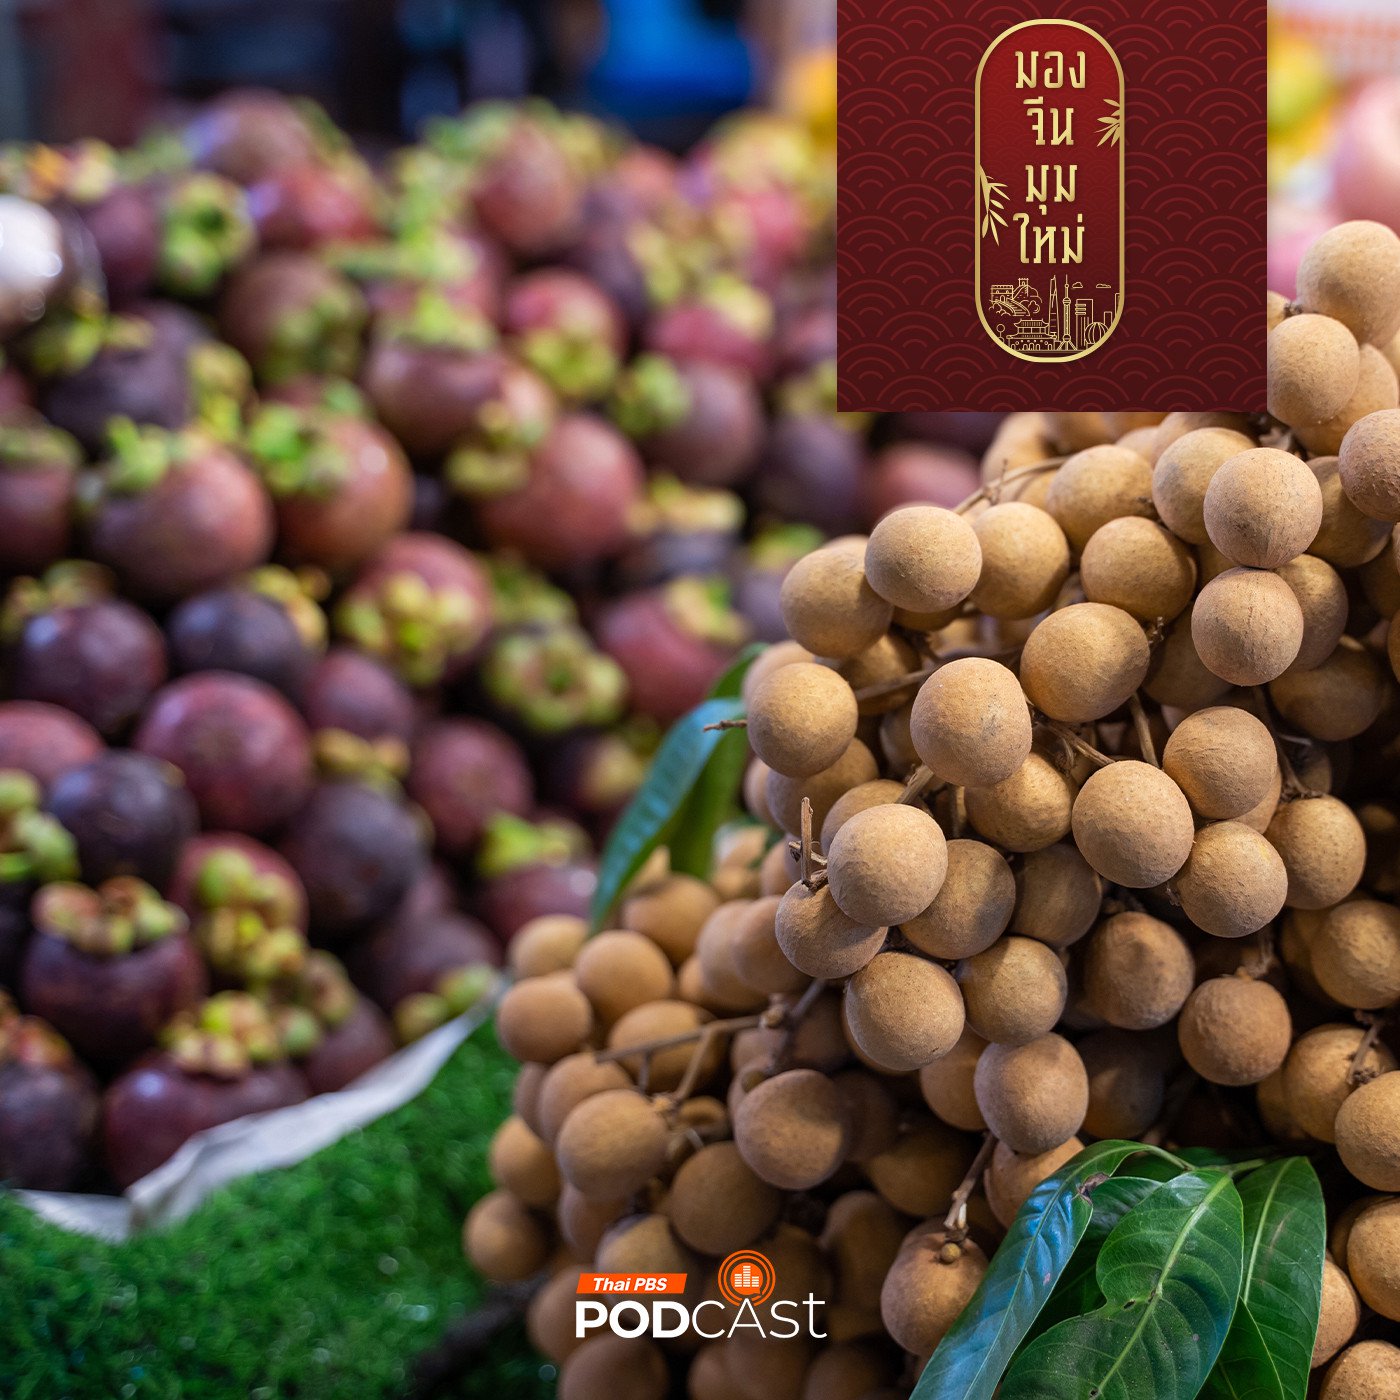 มองจีนมุมใหม่ EP. 164: โอกาสผลไม้ไทยส่งออกไปจีน : กรณีศึกษาชิลีและนิวซีแลนด�